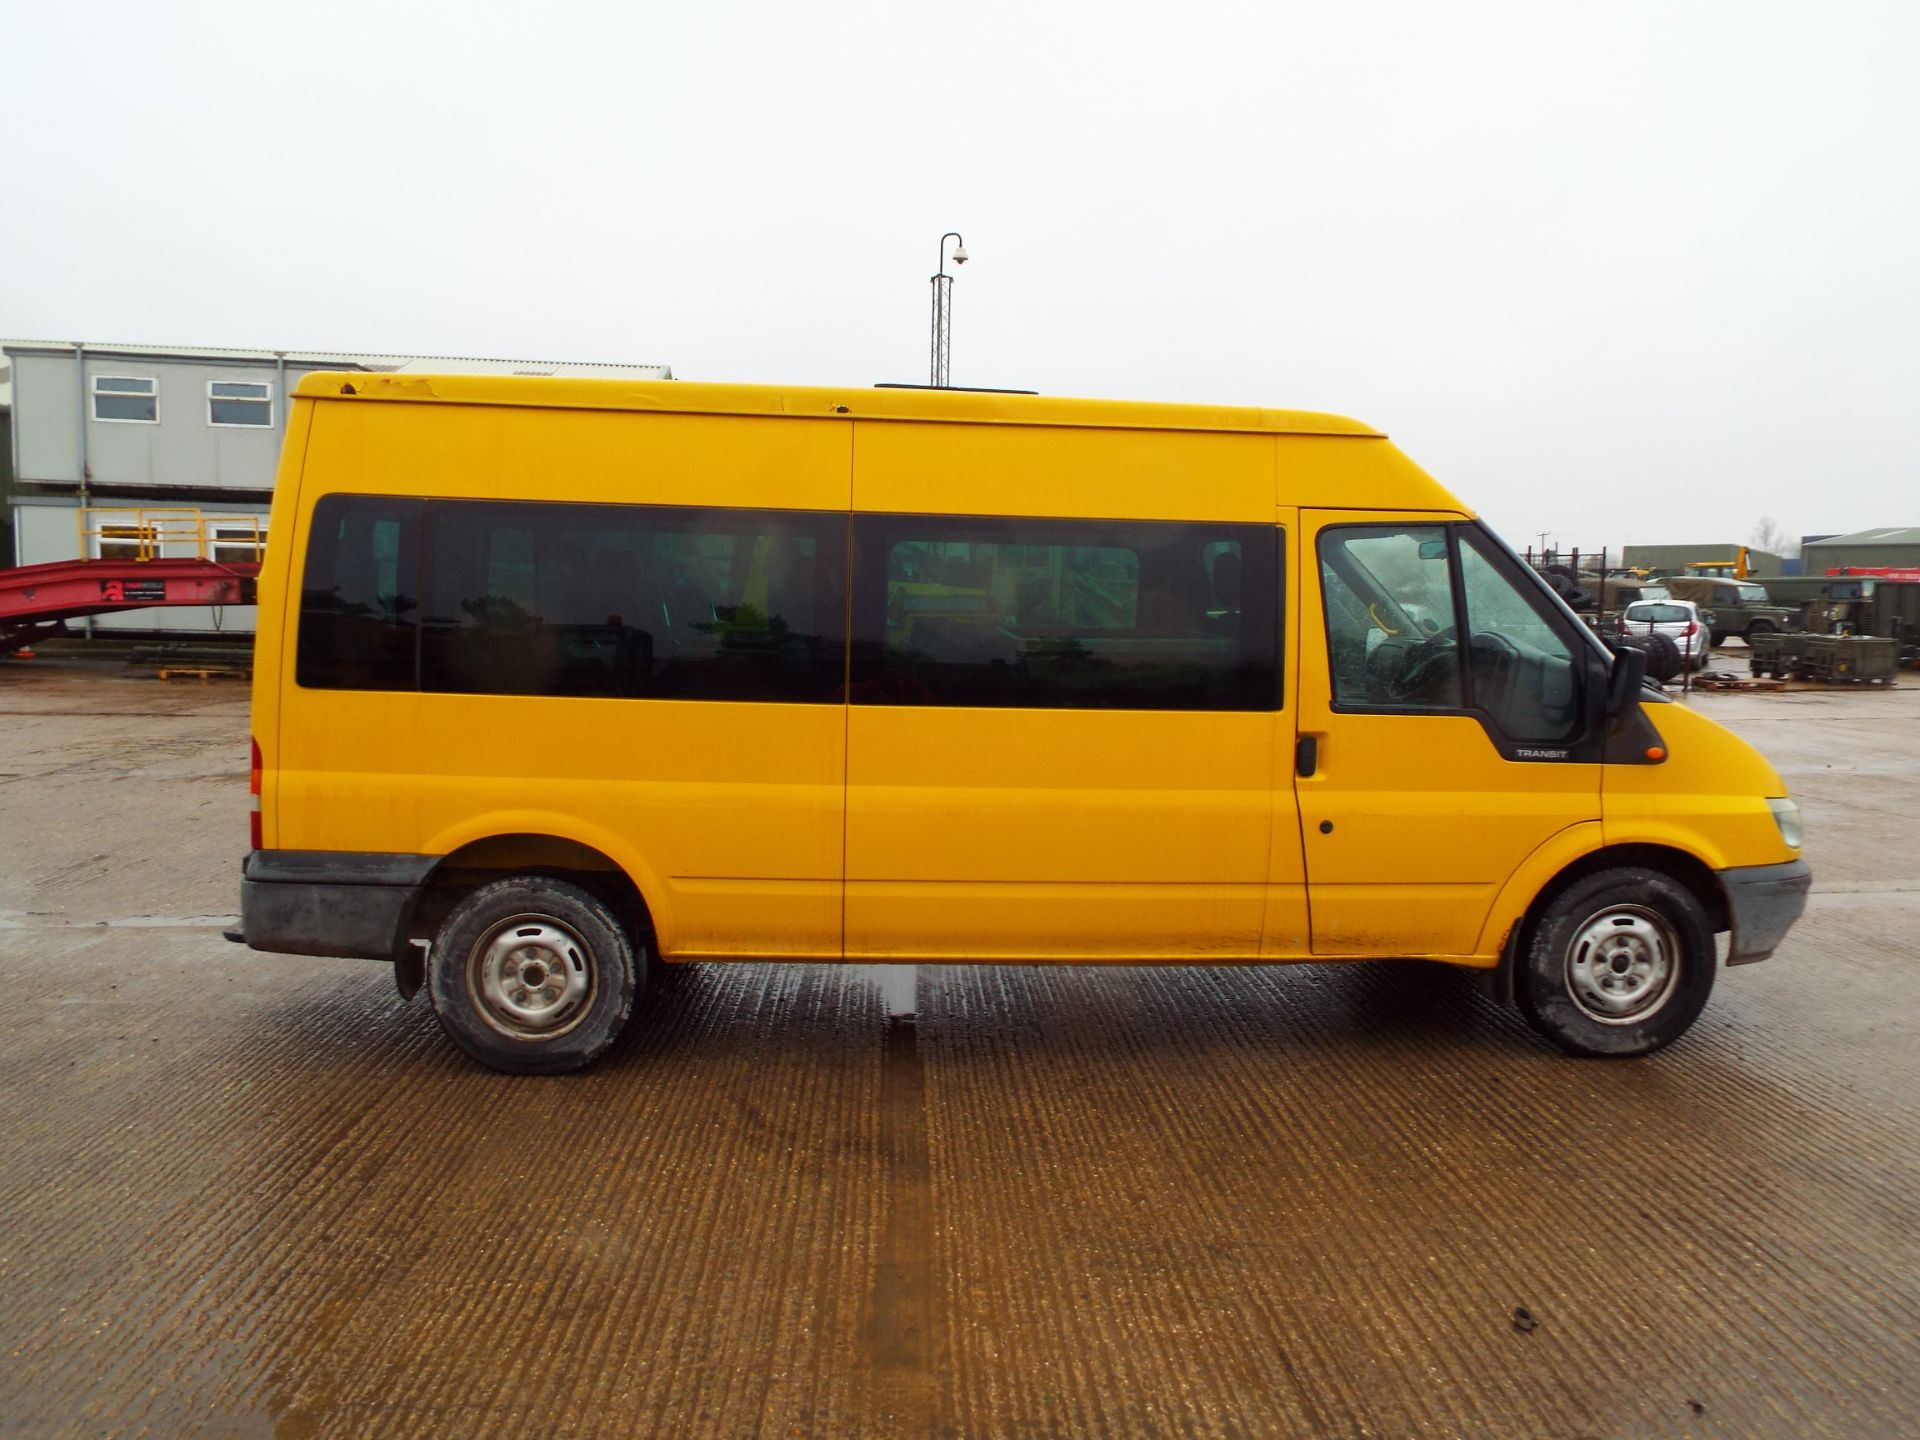 Ford Transit 11 Seat Minibus - Image 8 of 21